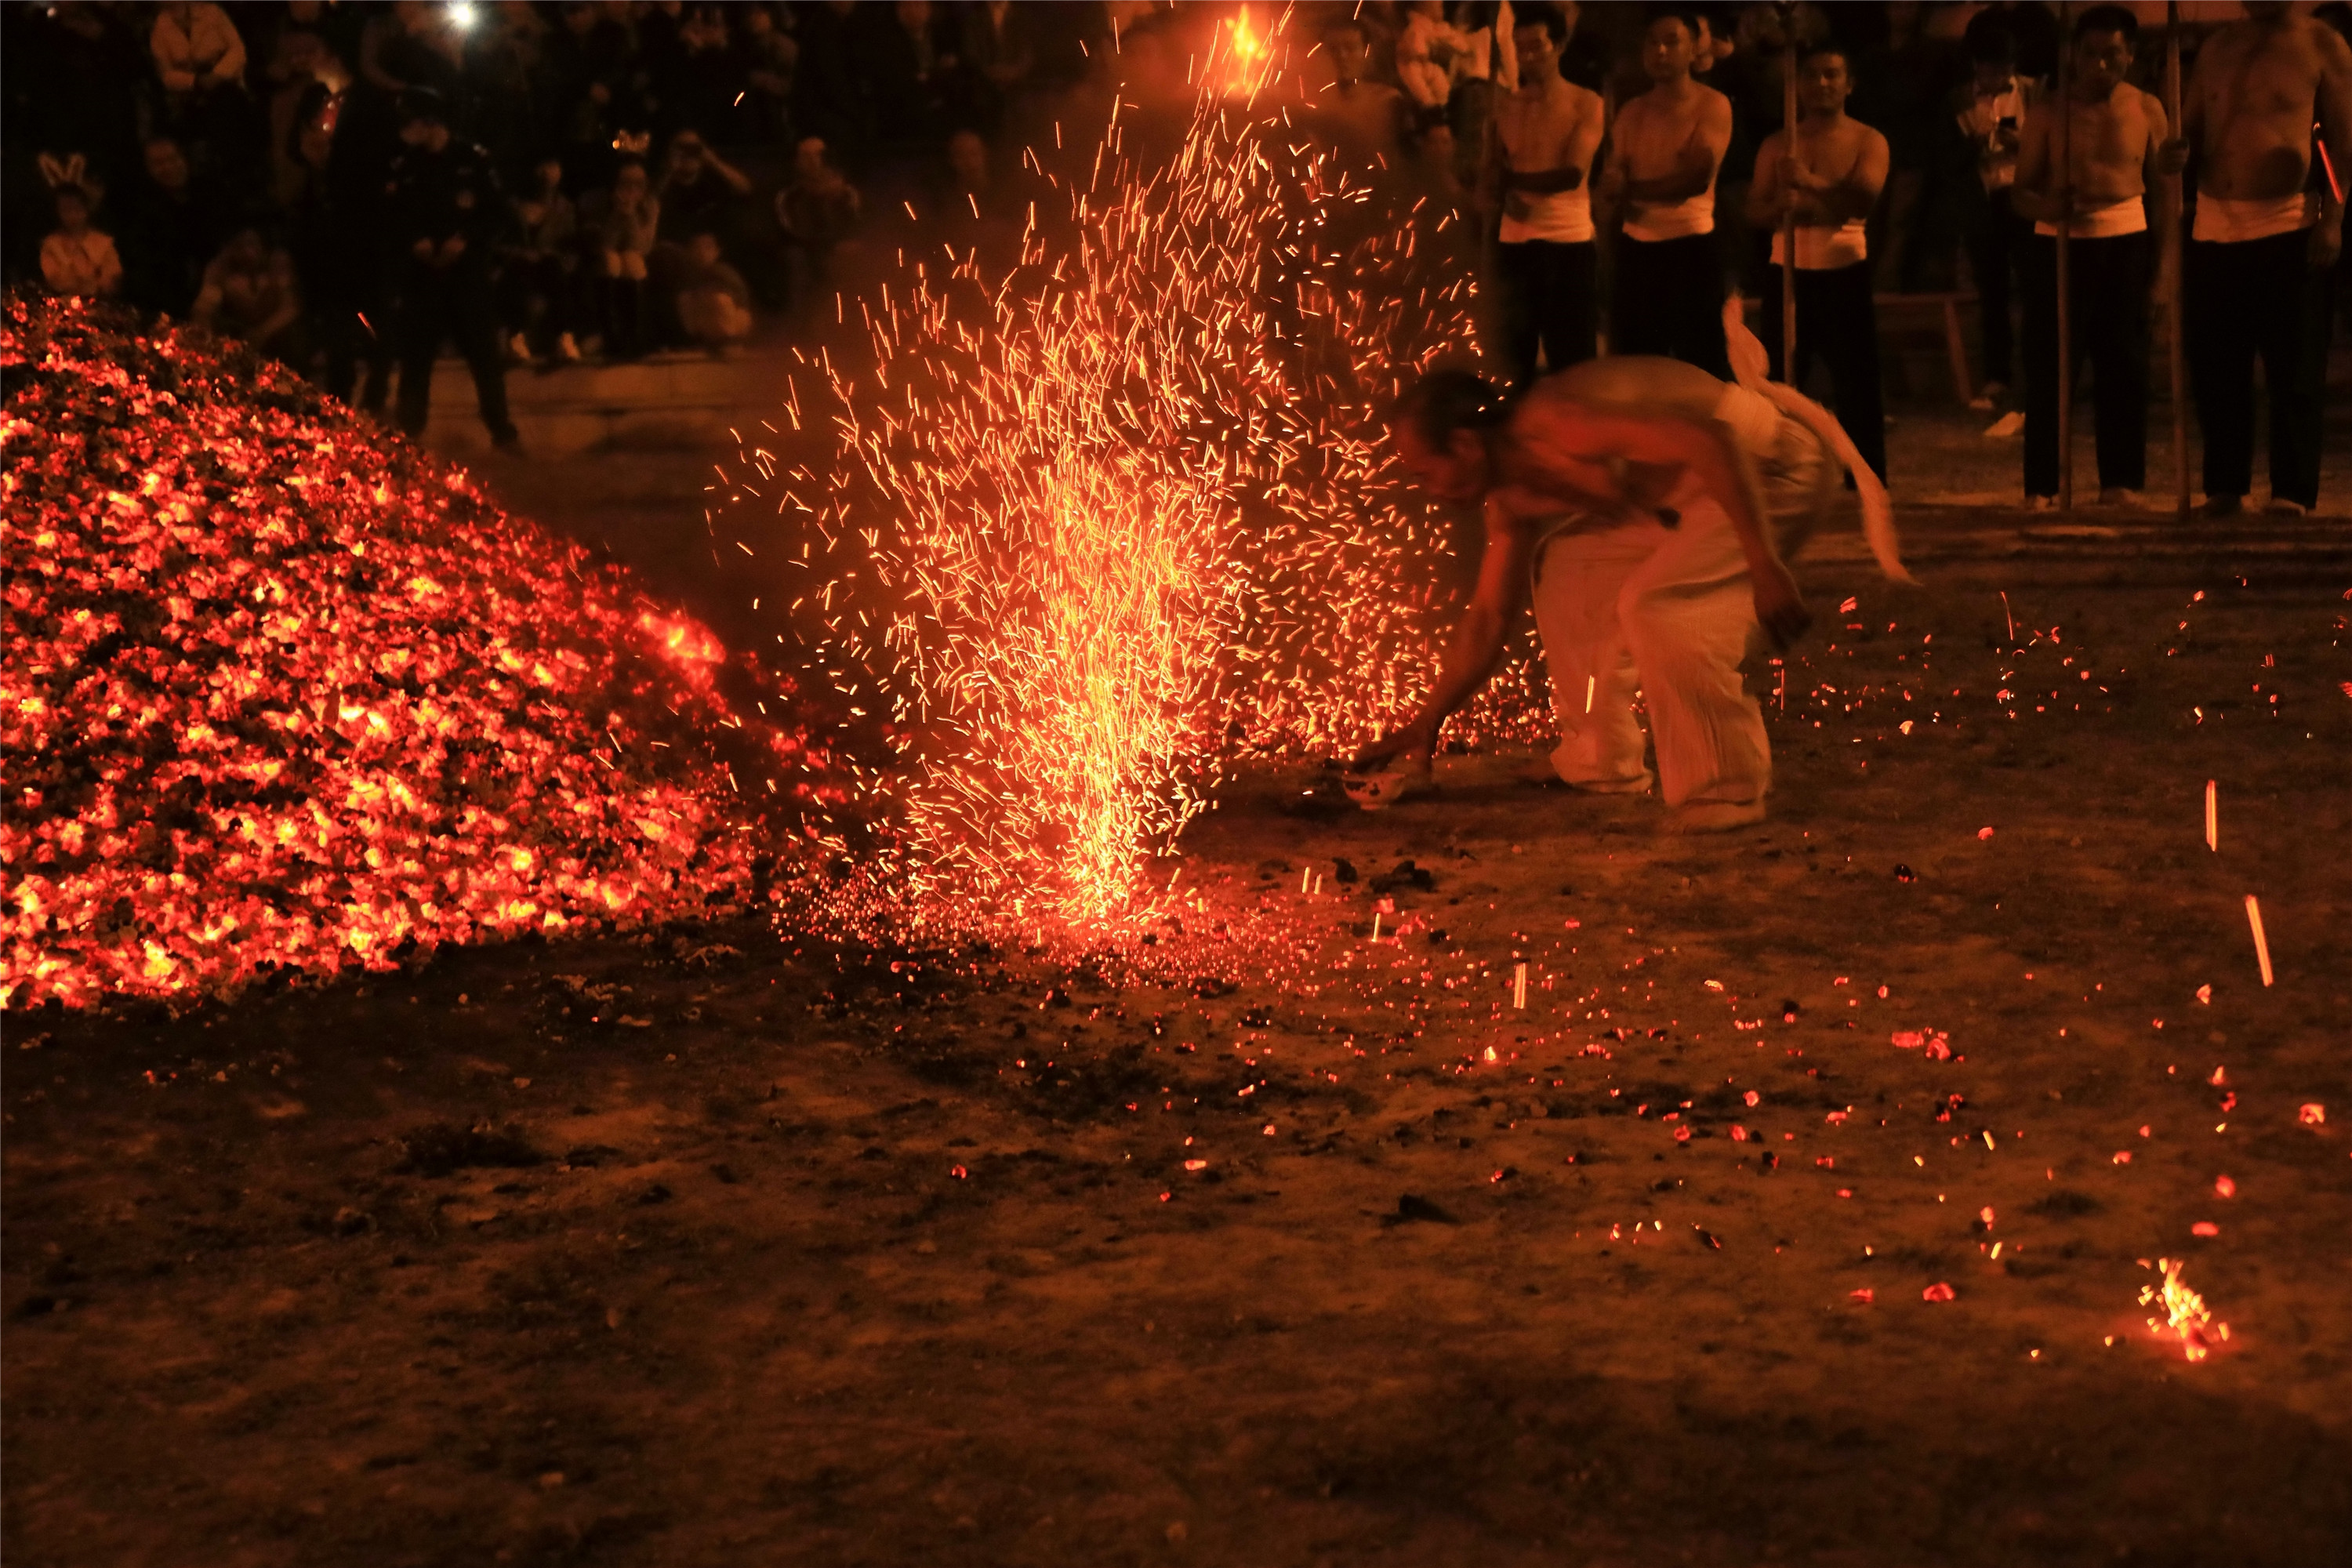 磐安炼火是一种古老的民俗活动,主要流传在浙江省金华市磐安县双峰